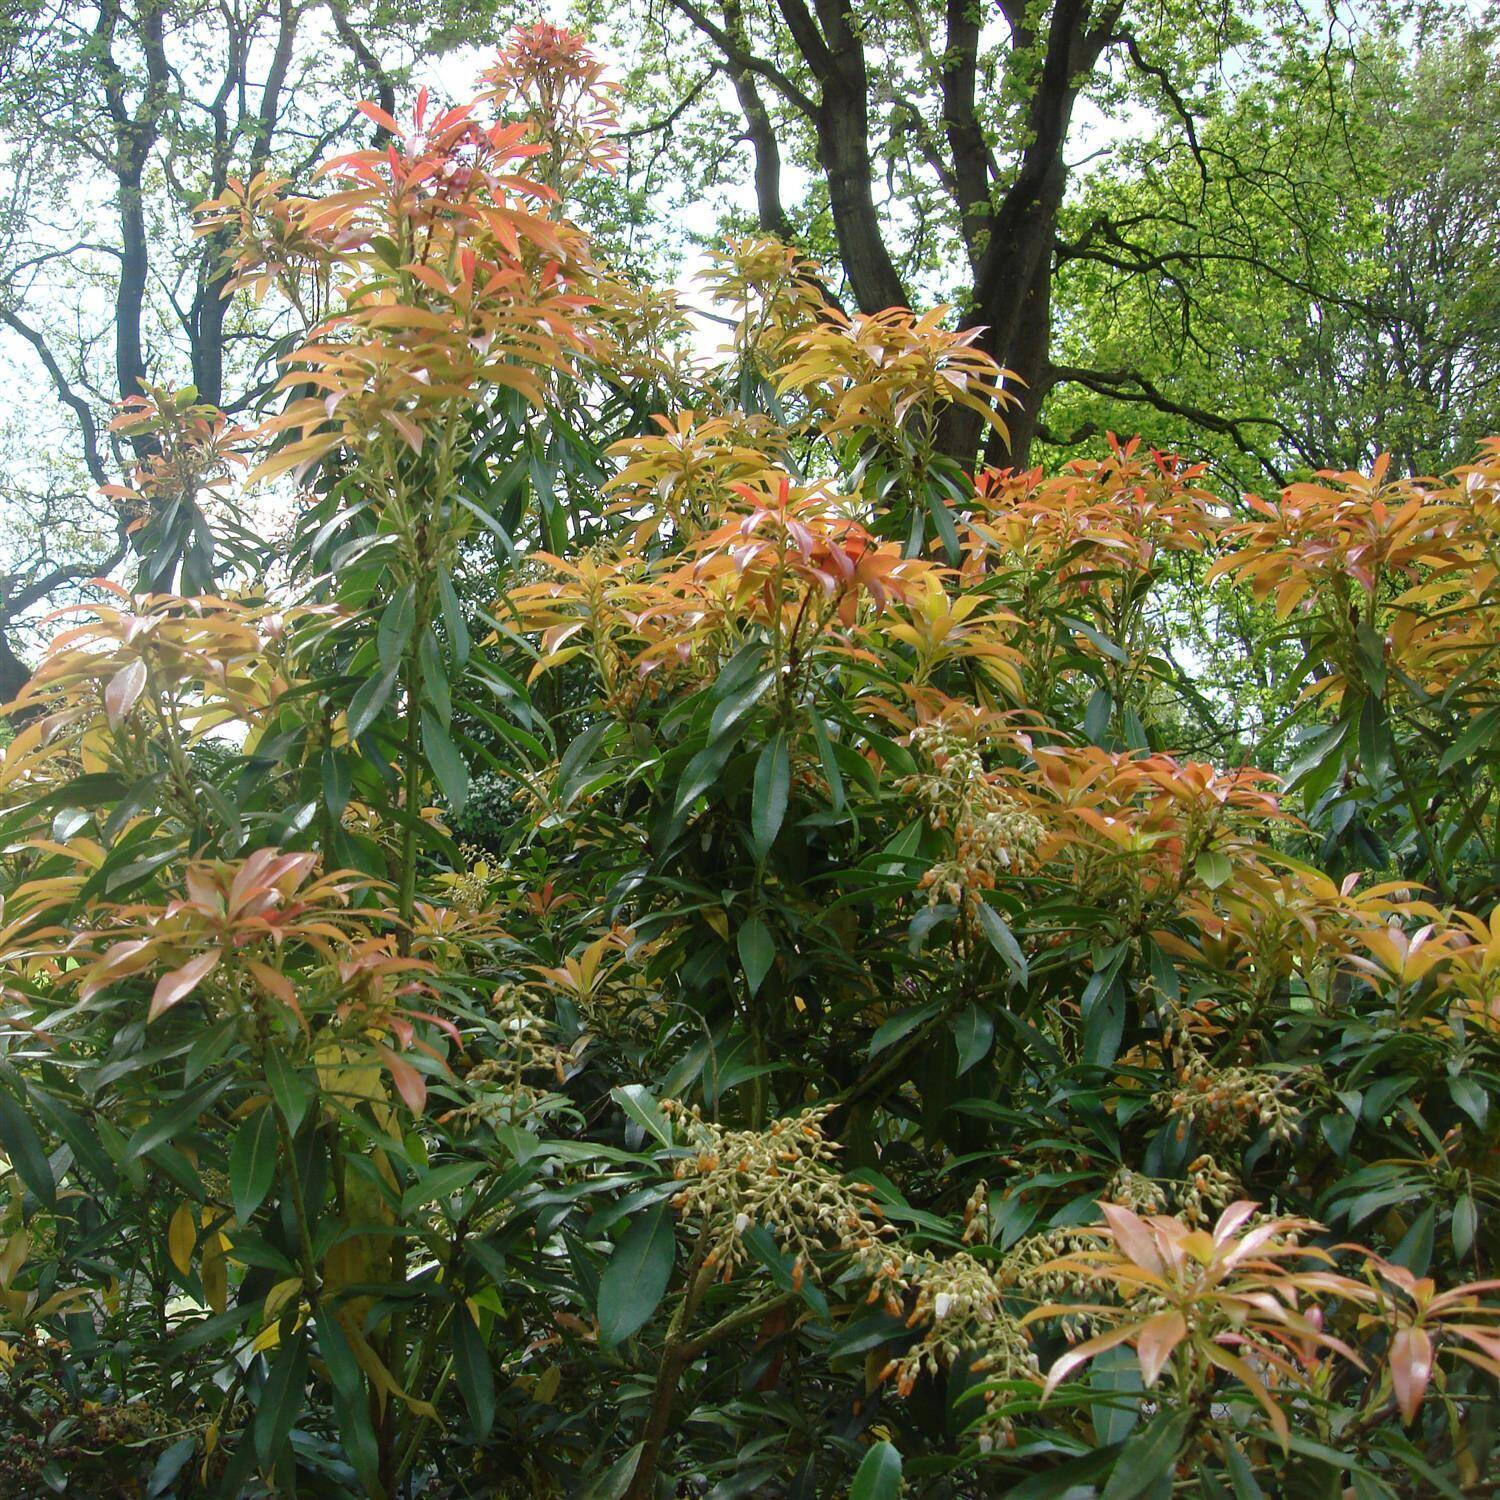  Schattenglöckchen 'Forest Flame' - Pieris japonica 'Forest Flame'